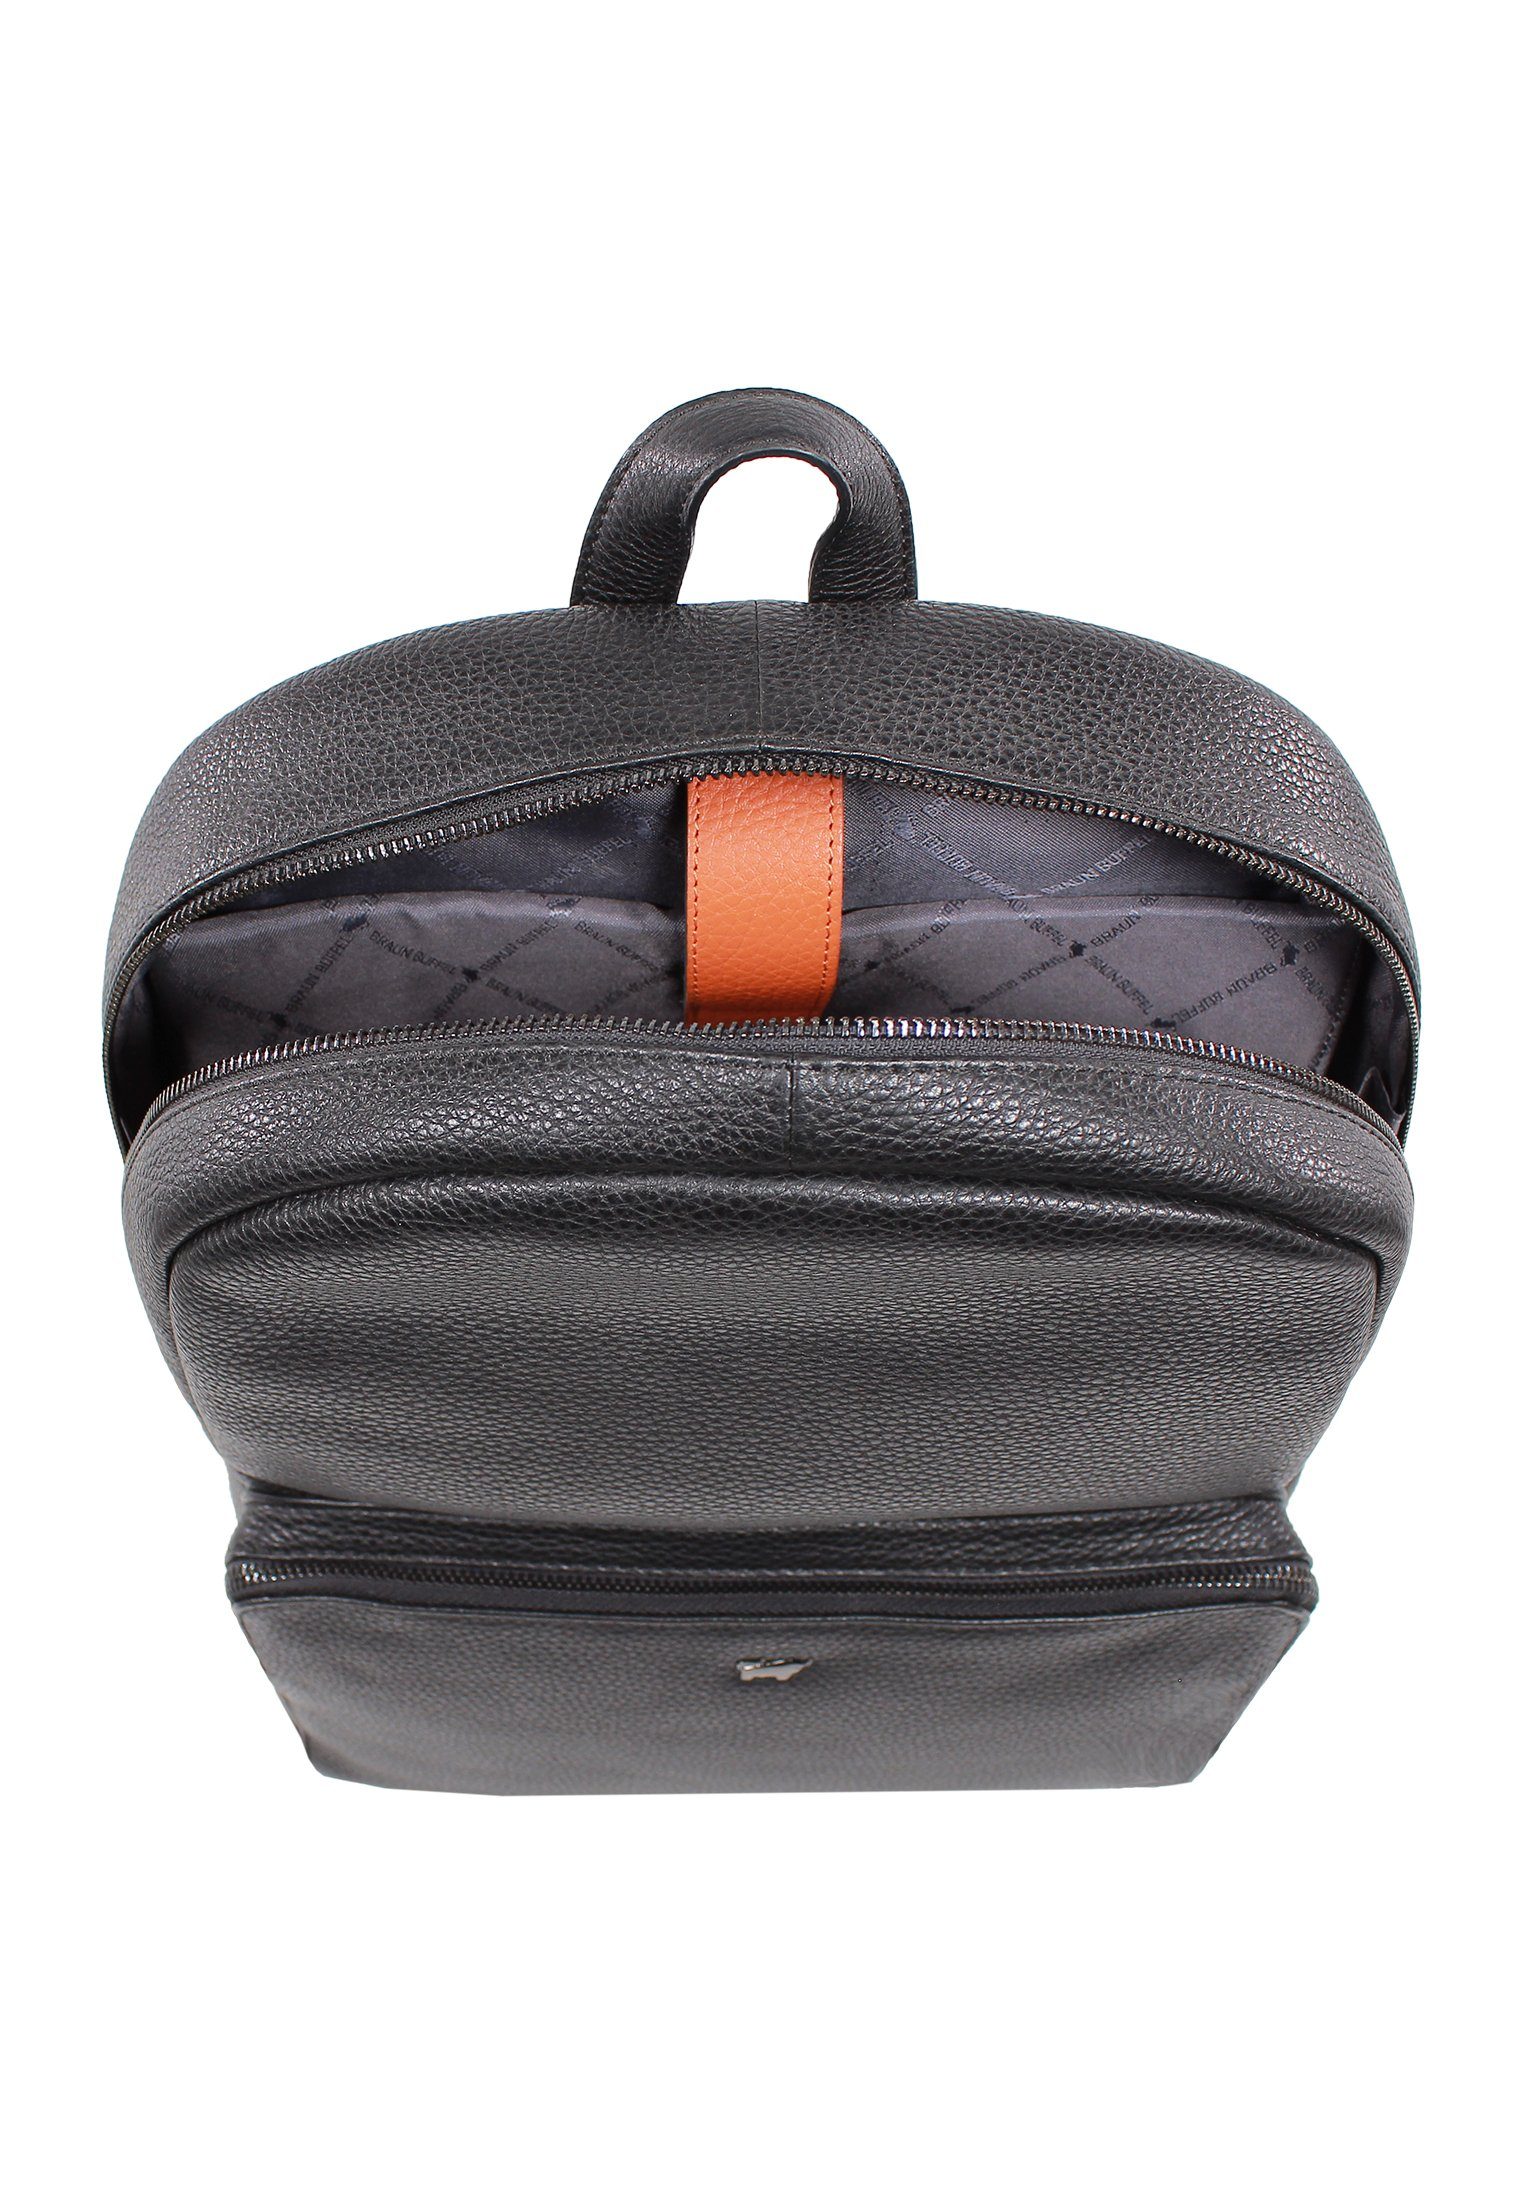 Notebook-Rucksack mit schwarz, Rucksack sportlich-elegant Braun Büffel Laptopfach NOVARA